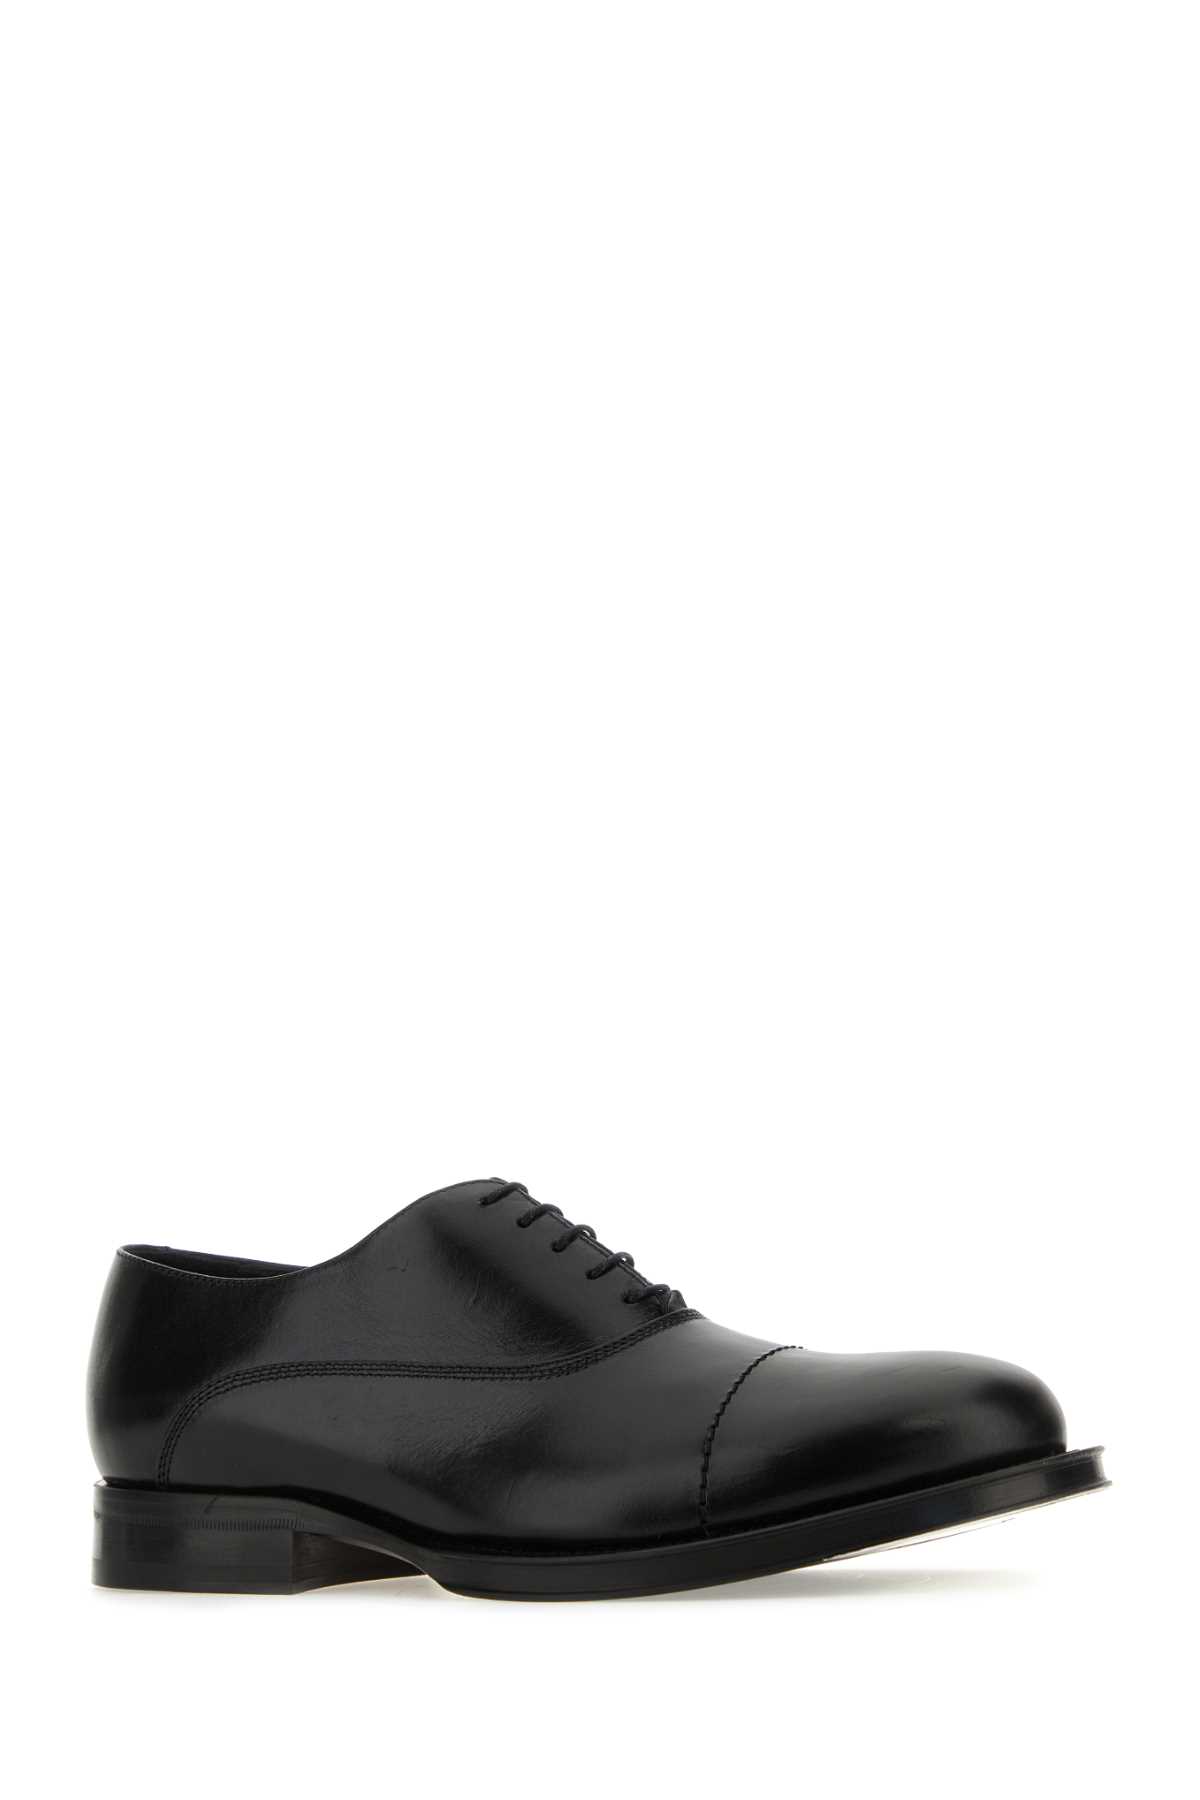 Shop Lanvin Black Leather Richelieu Medley Lace-up Shoes